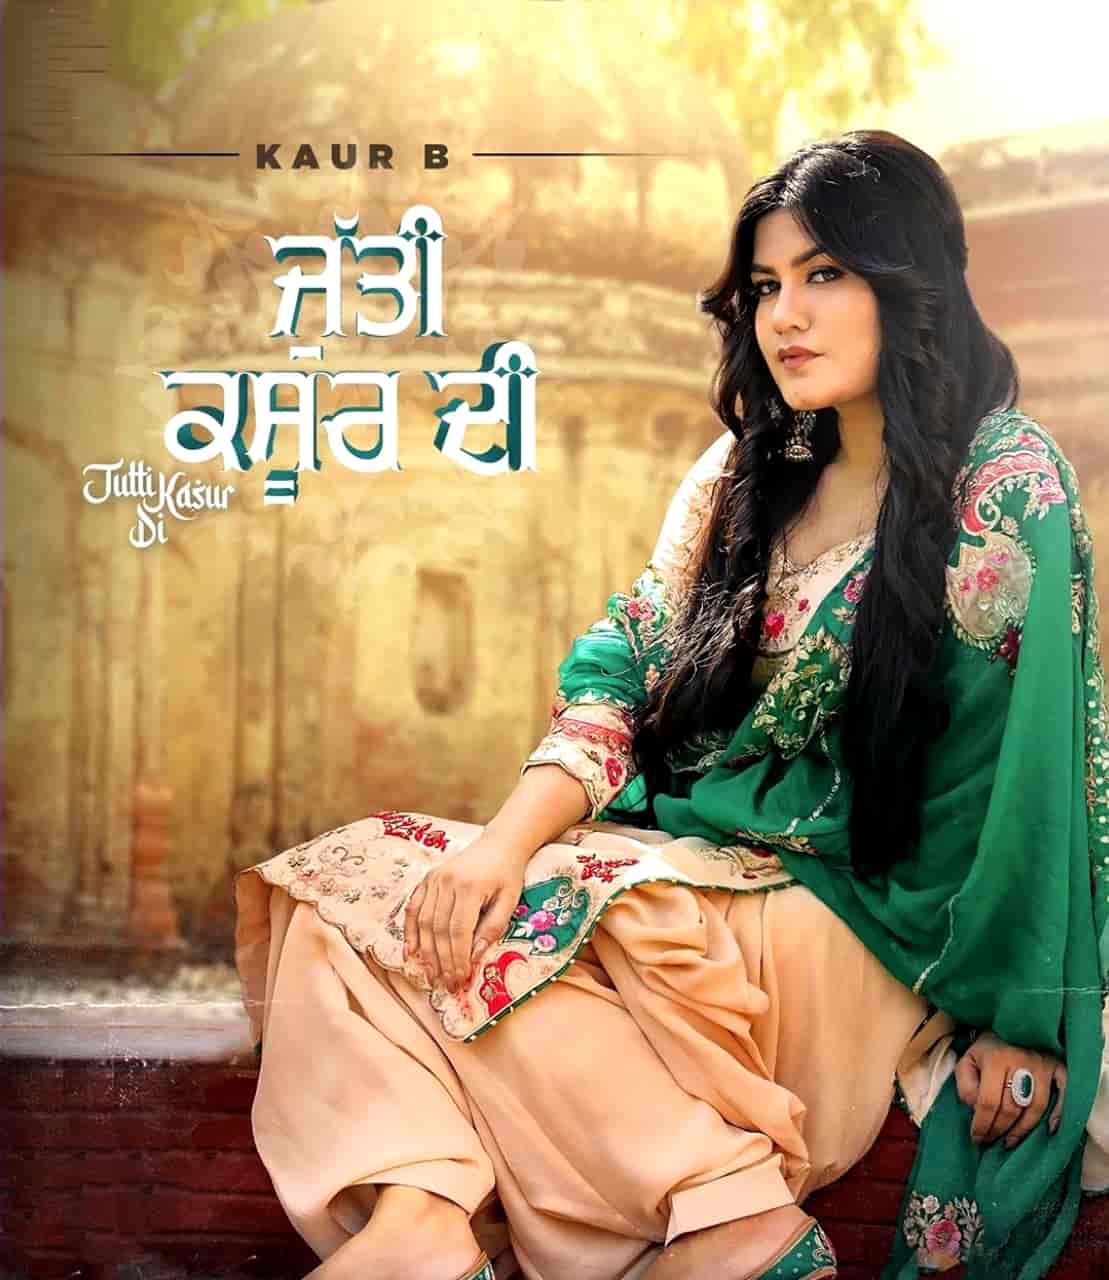 Jutti Kasur Di Punjabi Song Image Features Kur B